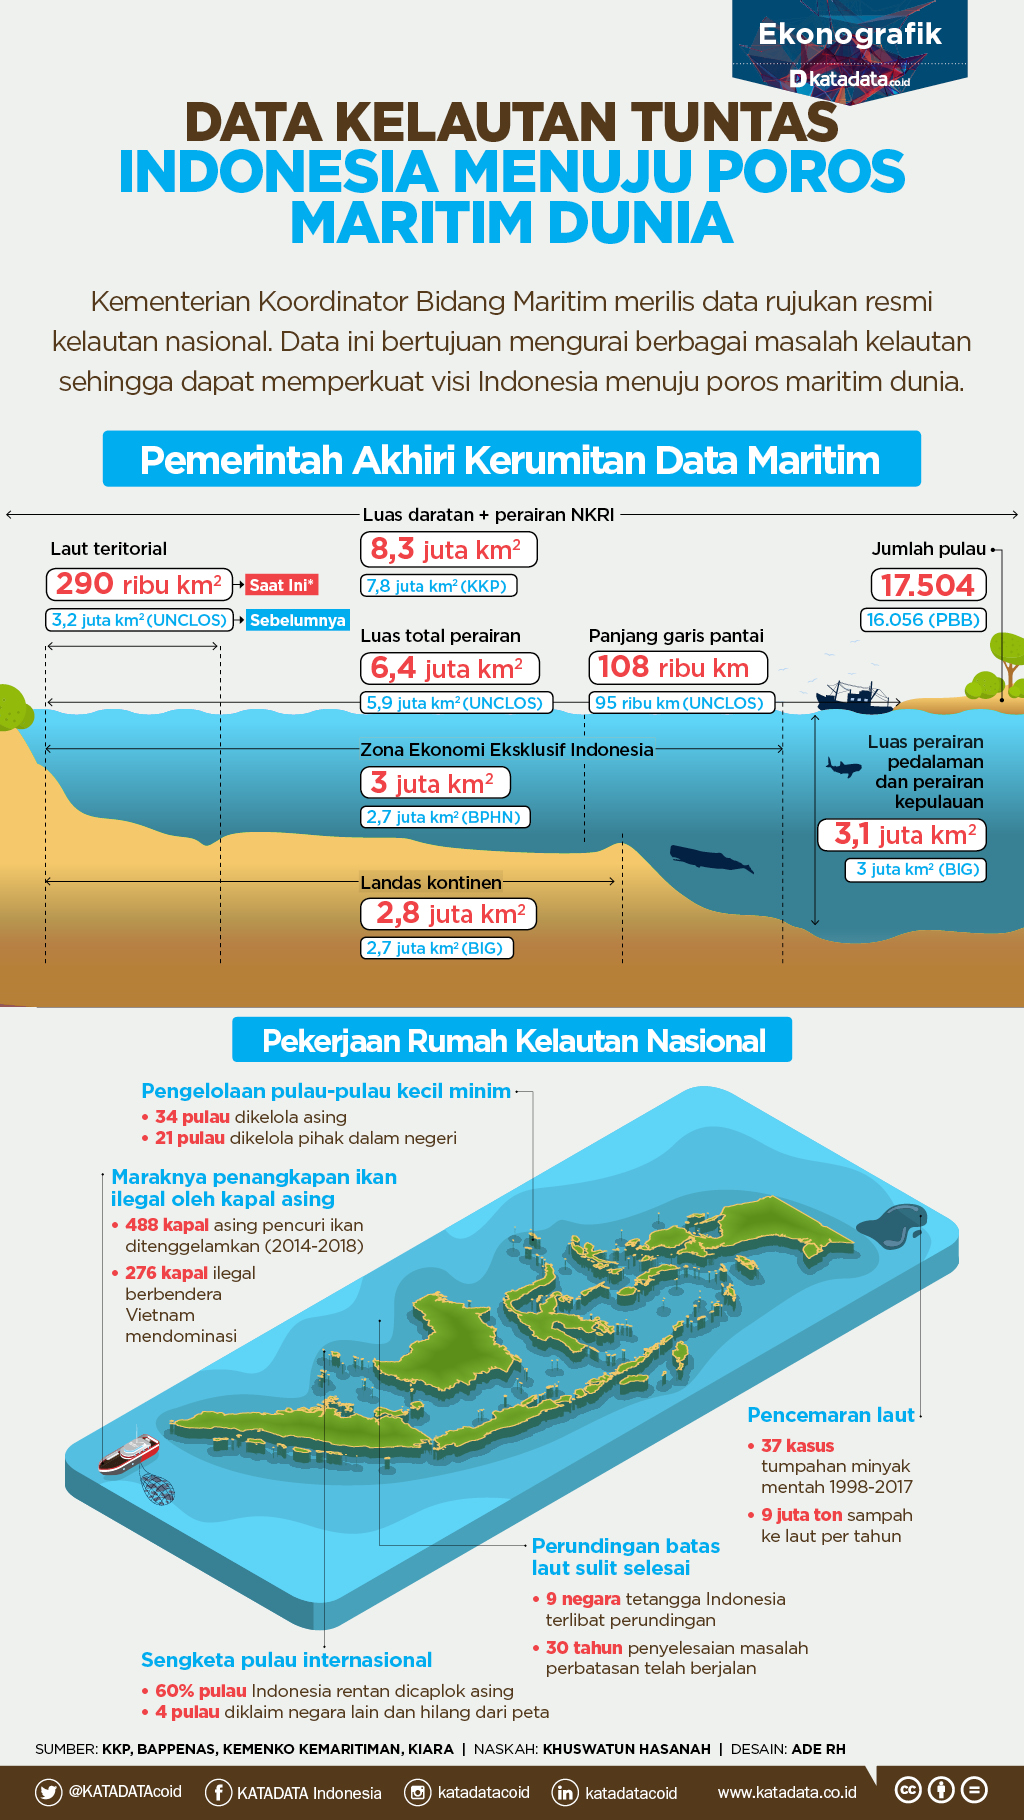 Indonesia Menuju Poros Maritim Dunia